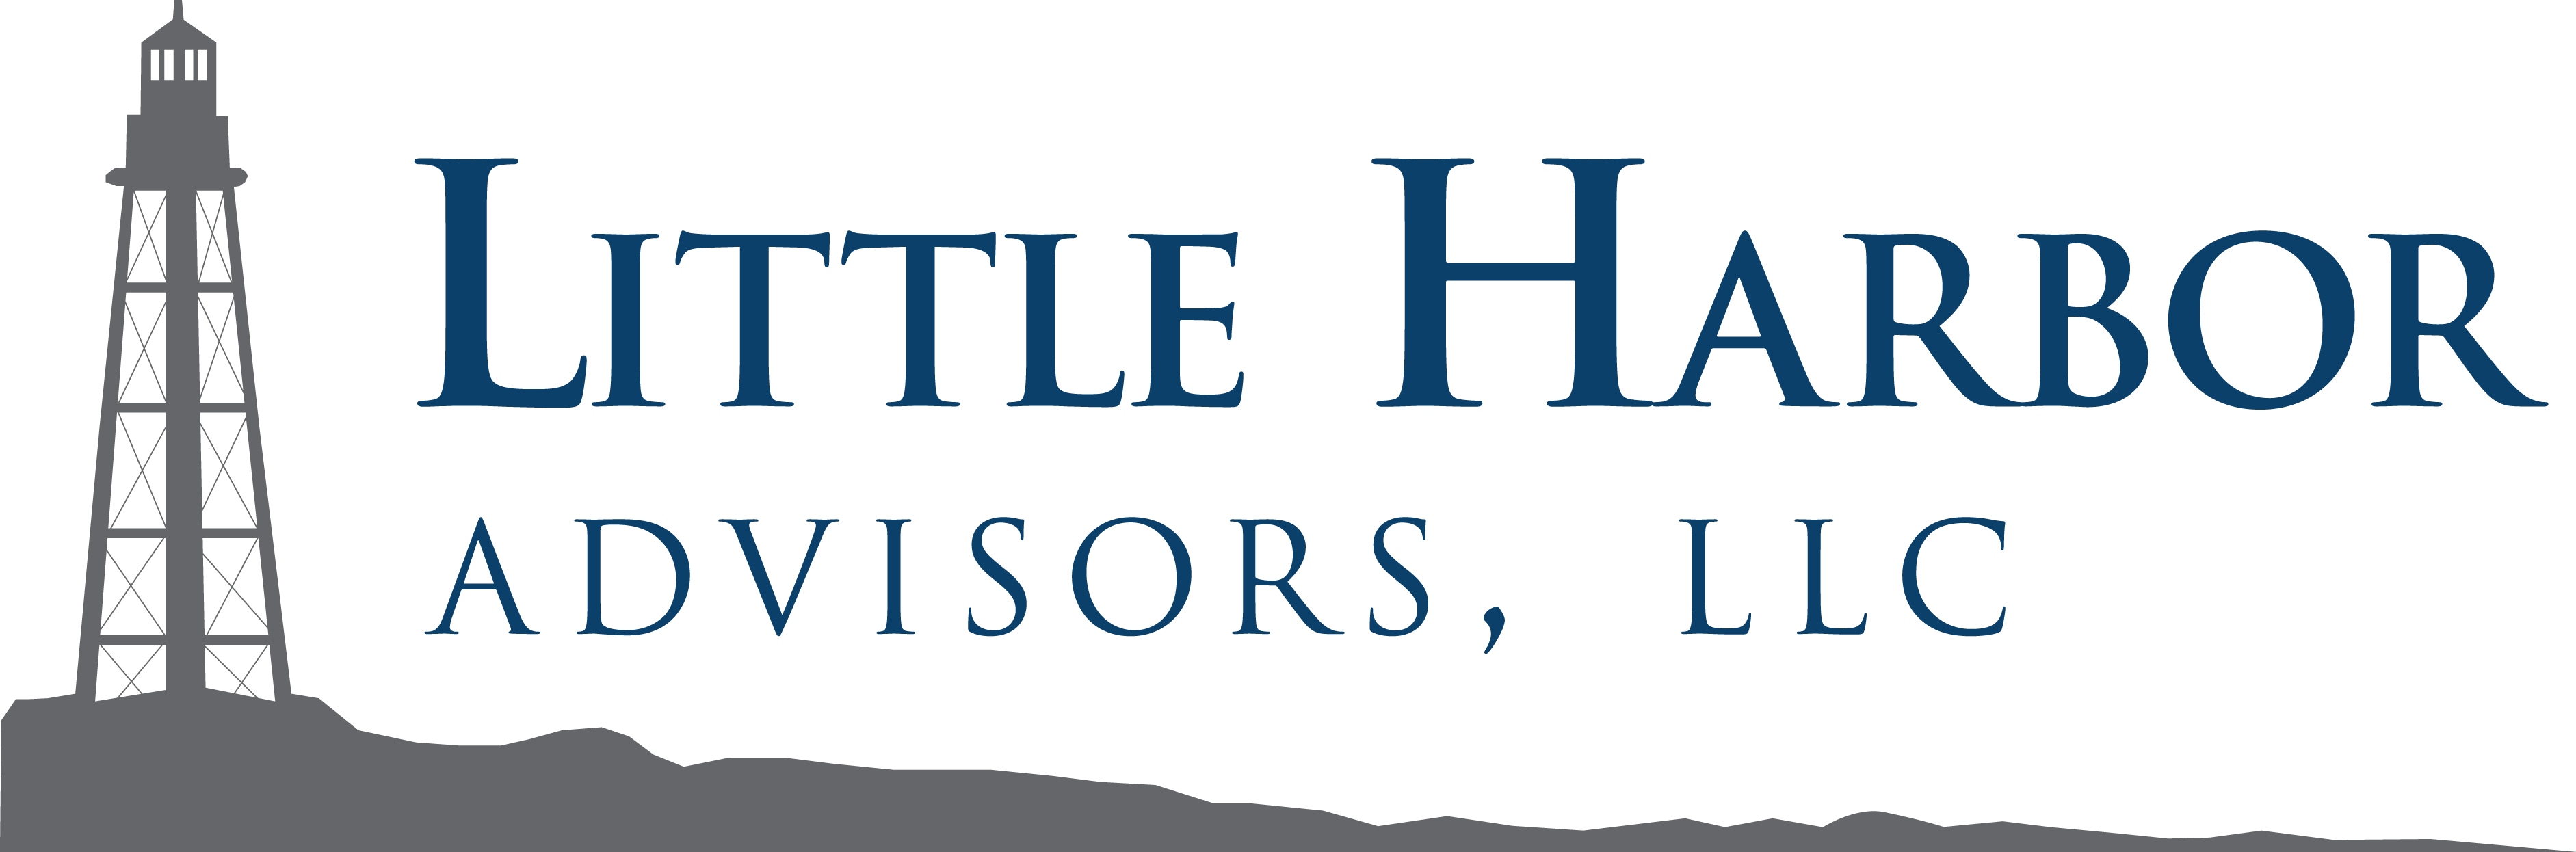 Little Harbor Advisors lanserade sin första börshandlade fond under april, vilken erbjuder investerare en aktivt förvaltad strategi som kan hjälpa till att navigera snabbt under förändrade marknadsförhållanden.